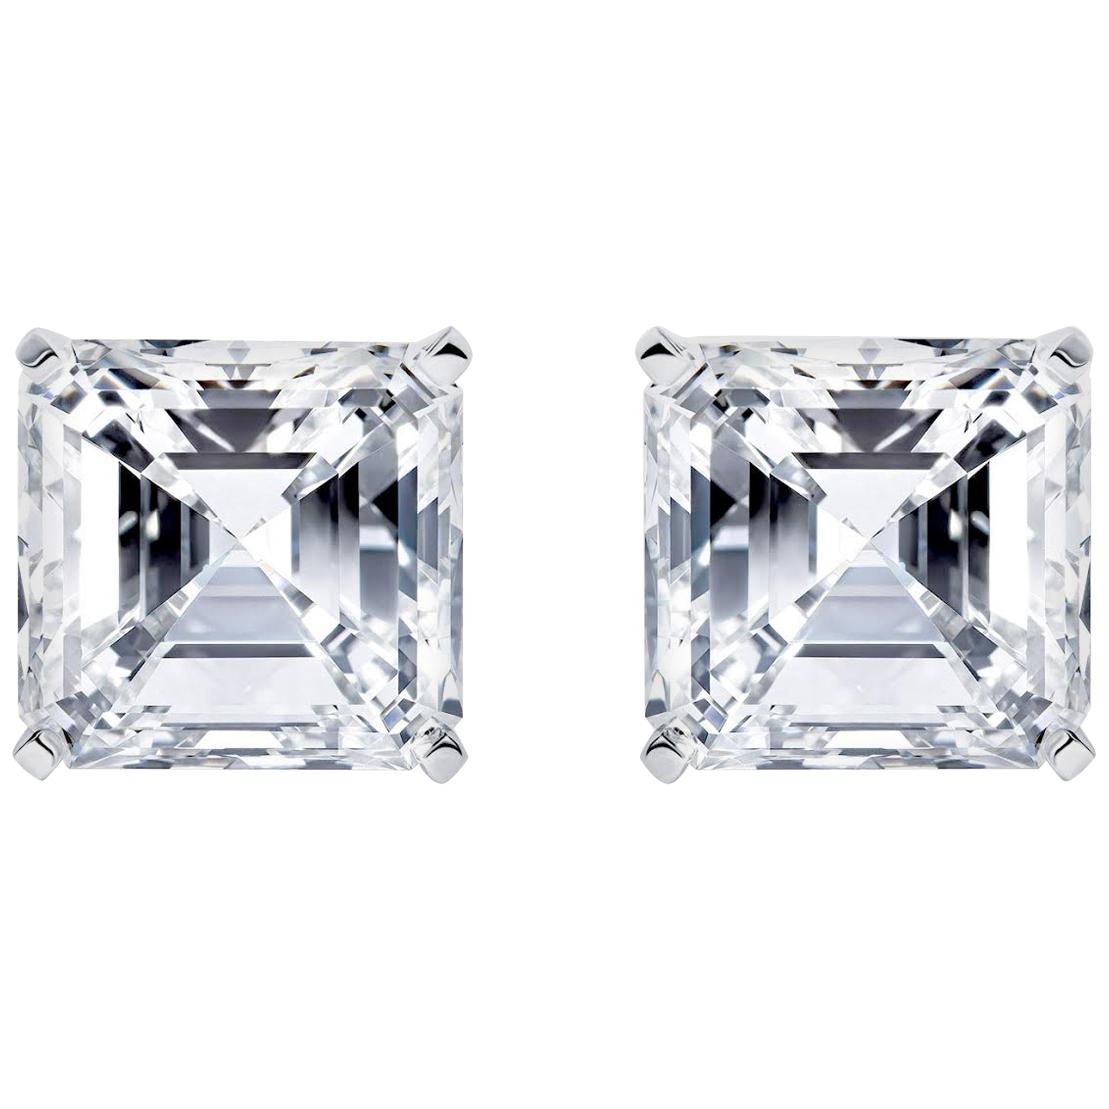 Issac Nussbaum GIA Certified 11.53 Carat Asscher Cut Diamond Stud Earrings